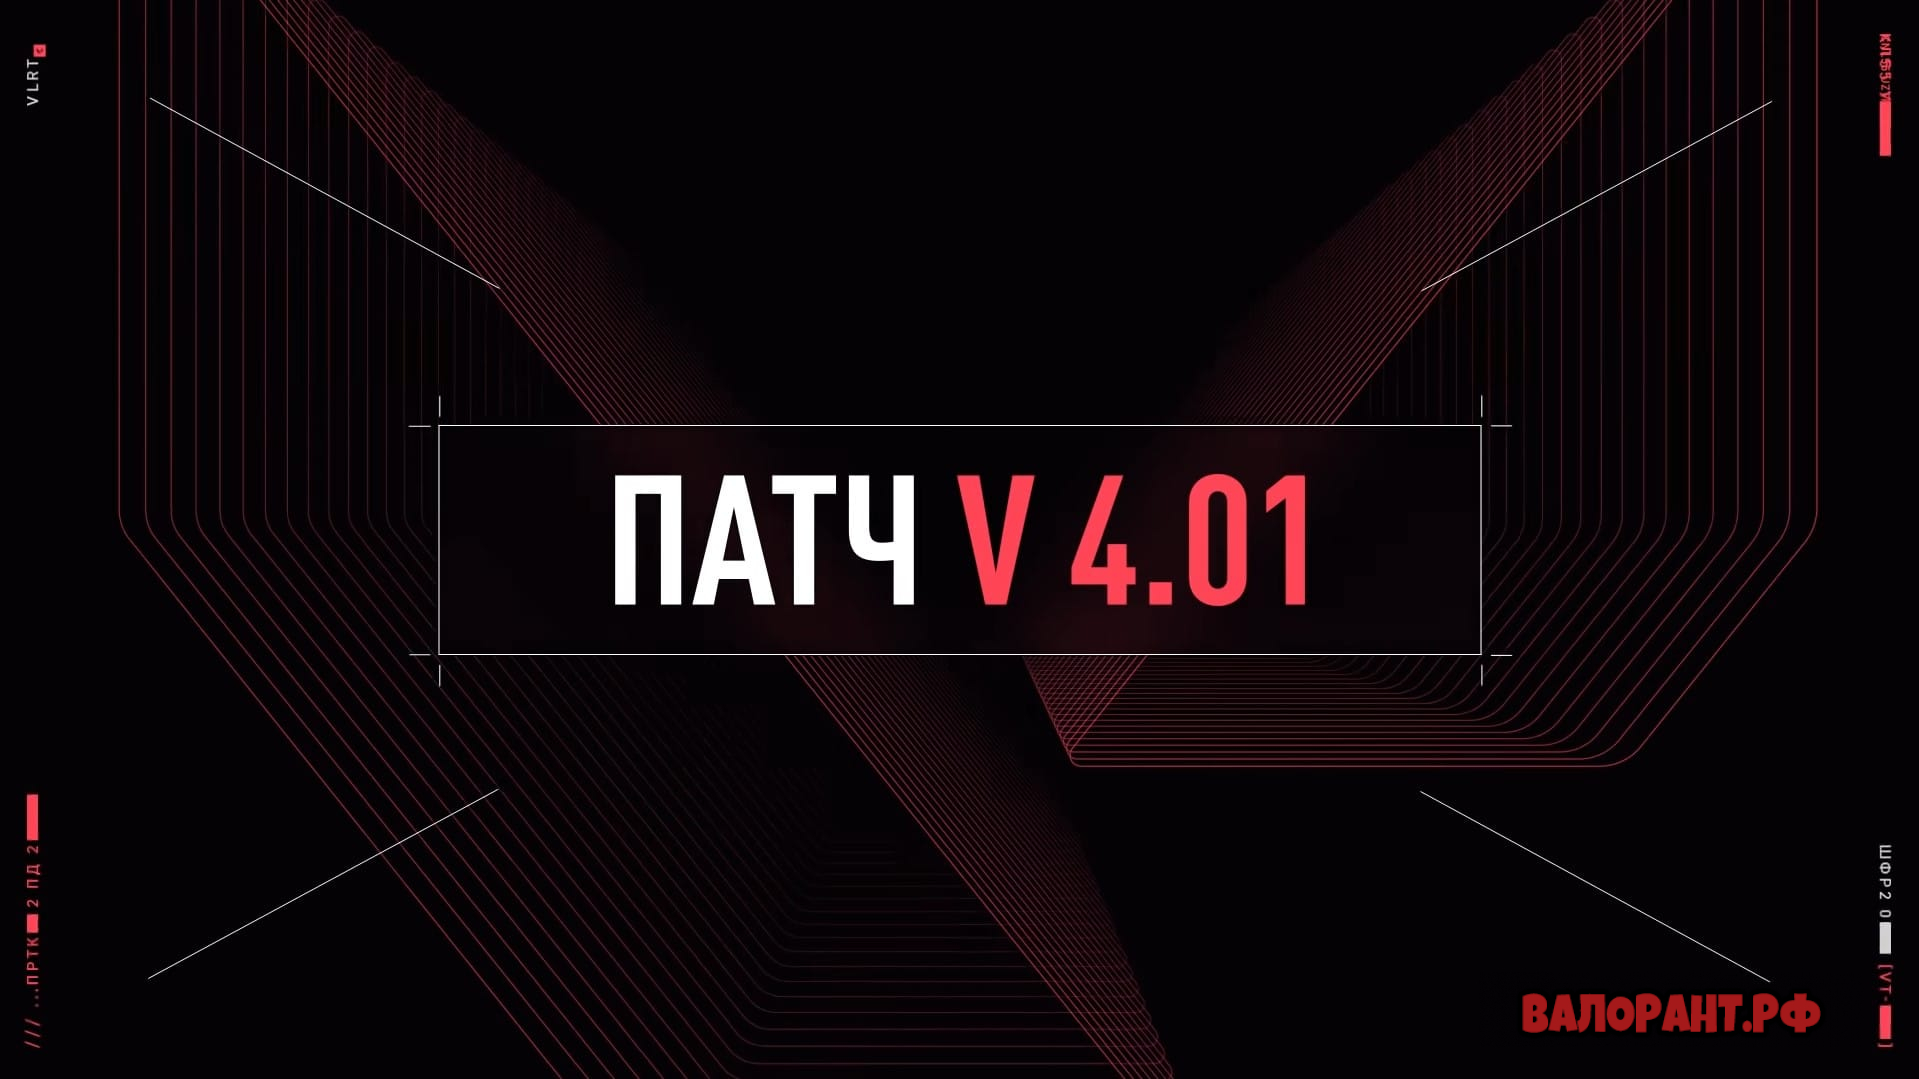 Spisok izmenenij Valorant patch 4.01 - Список изменений Валорант - патч 4.01